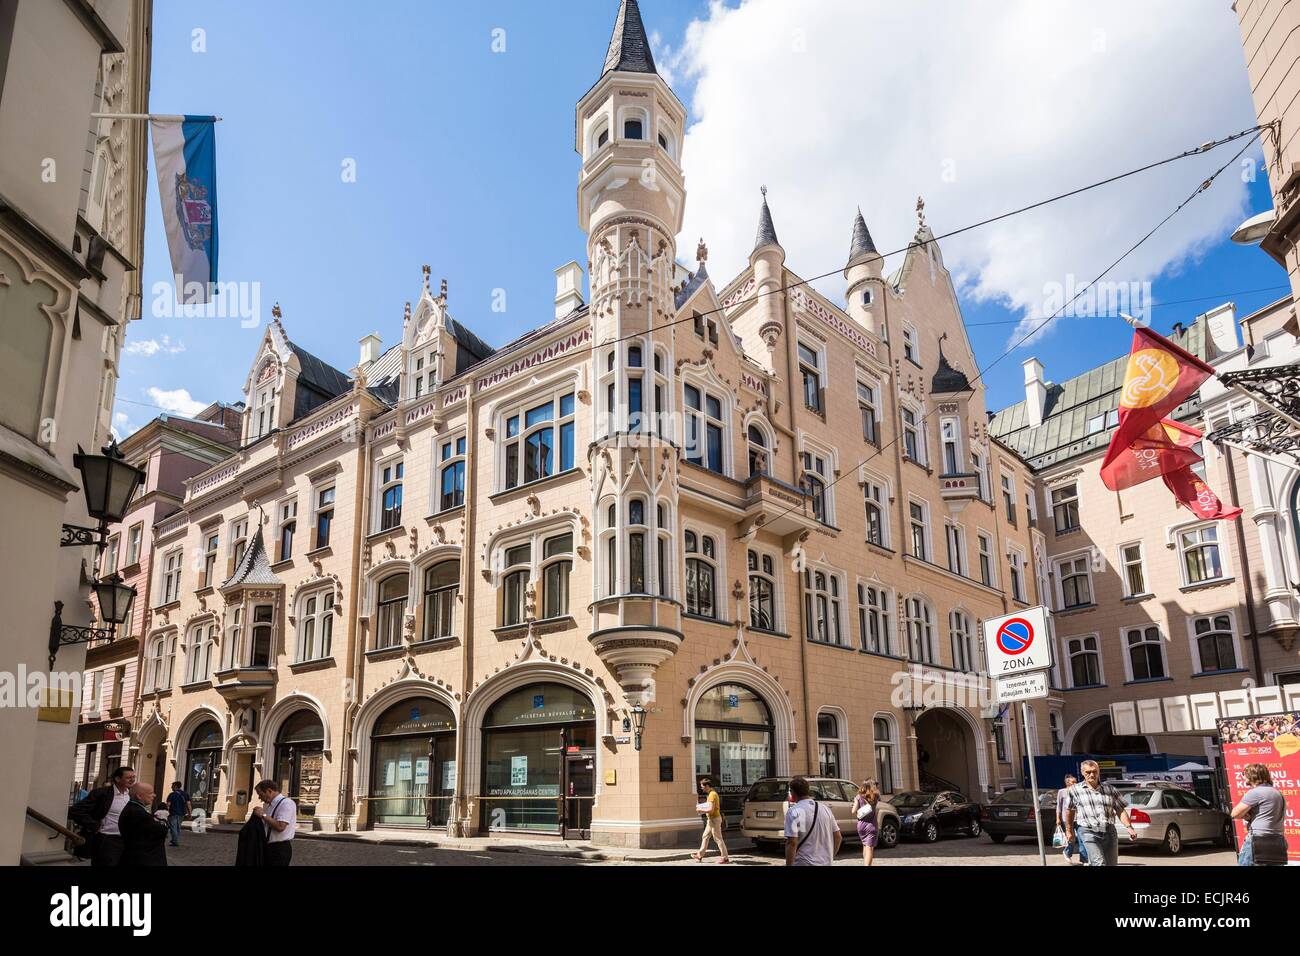 Lettland (Baltikum), Riga, Europäische Kulturhauptstadt 2014, Altstadt von der UNESCO als Weltkulturerbe gelistet, Straße Amatu große Gilde Rathaus Stockfoto